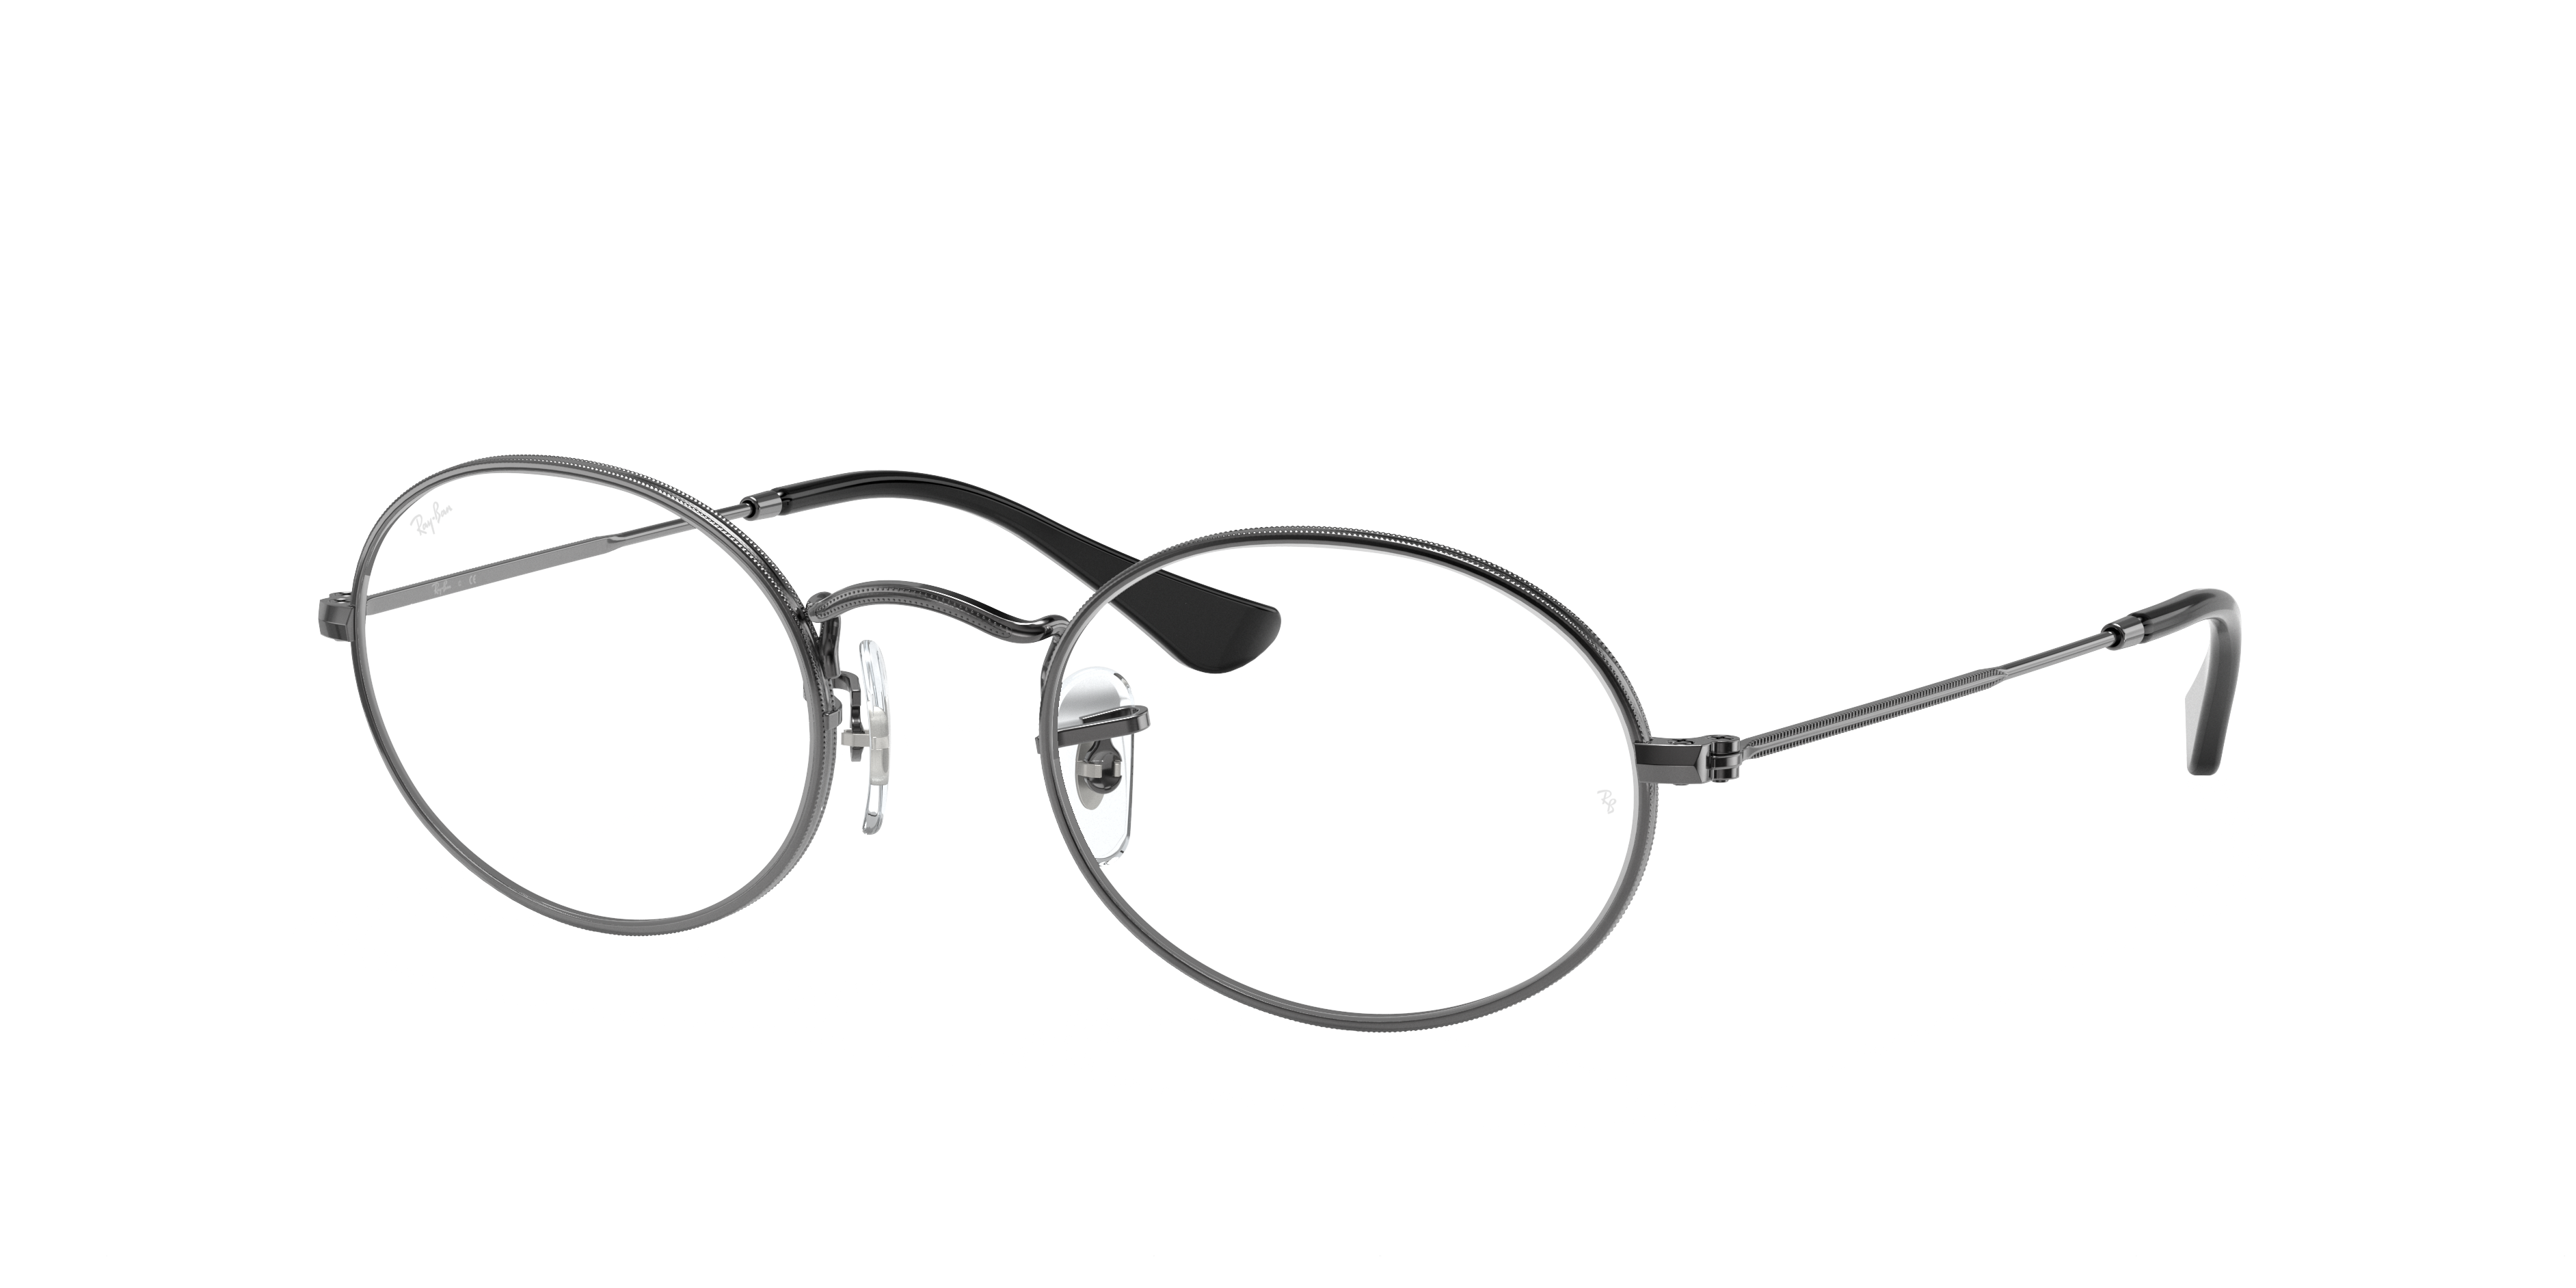 Ray-Ban prescription glasses Oval 